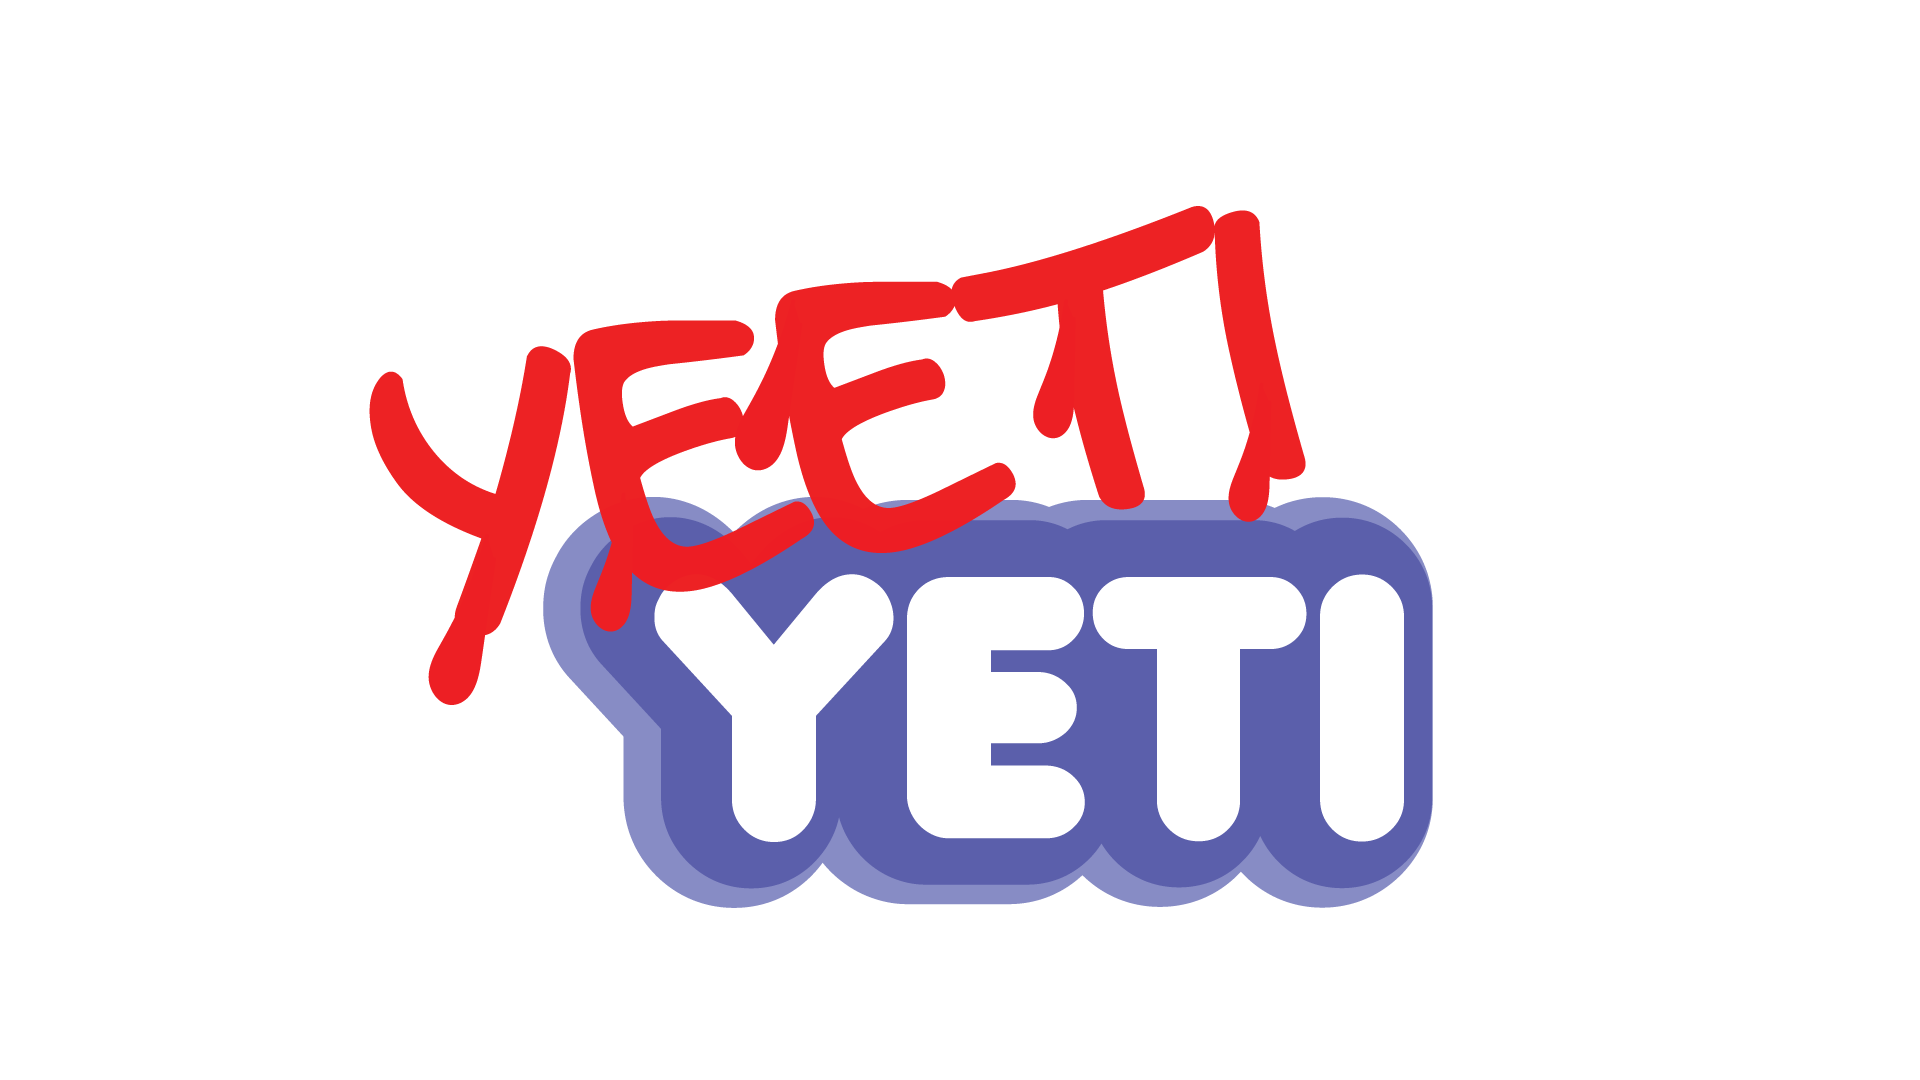 Yeeti Yeti